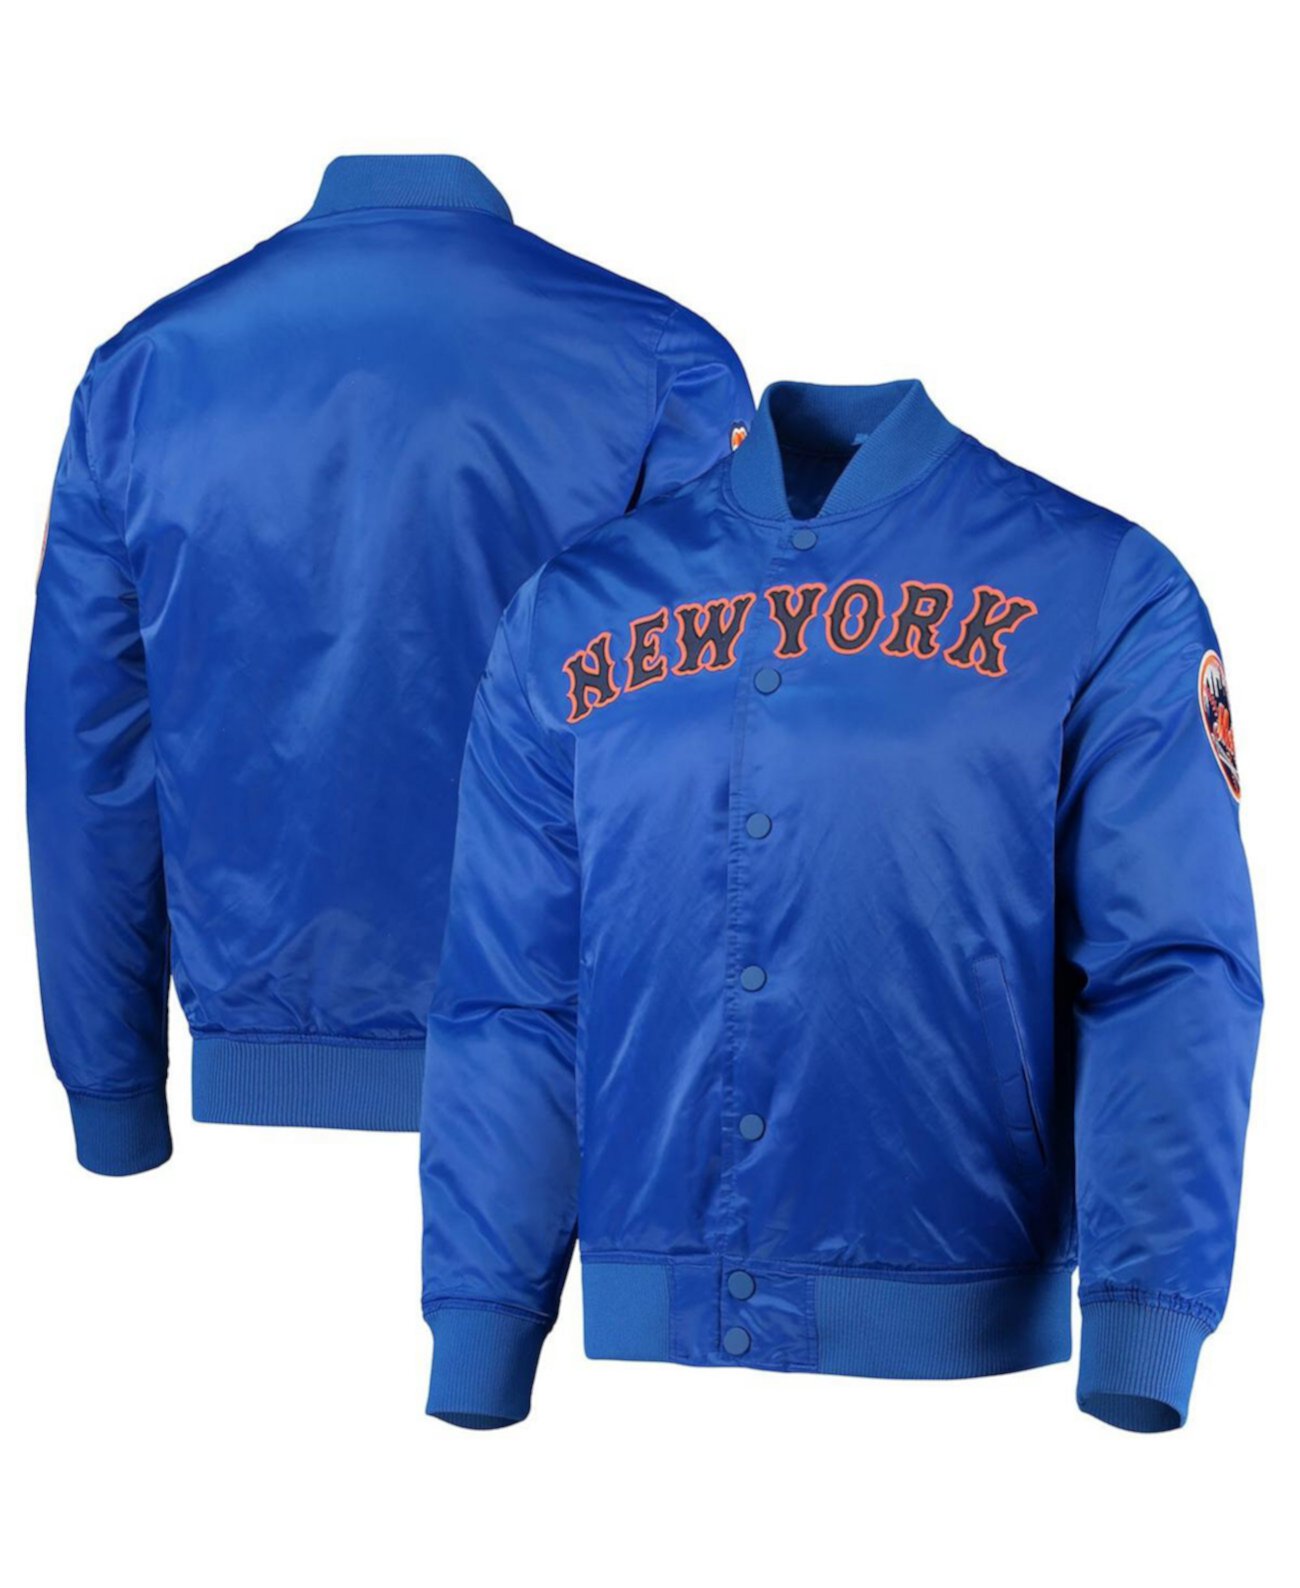 Мужская атласная куртка Royal New York Mets с надписью Wordmark Full-Snap Pro Standard